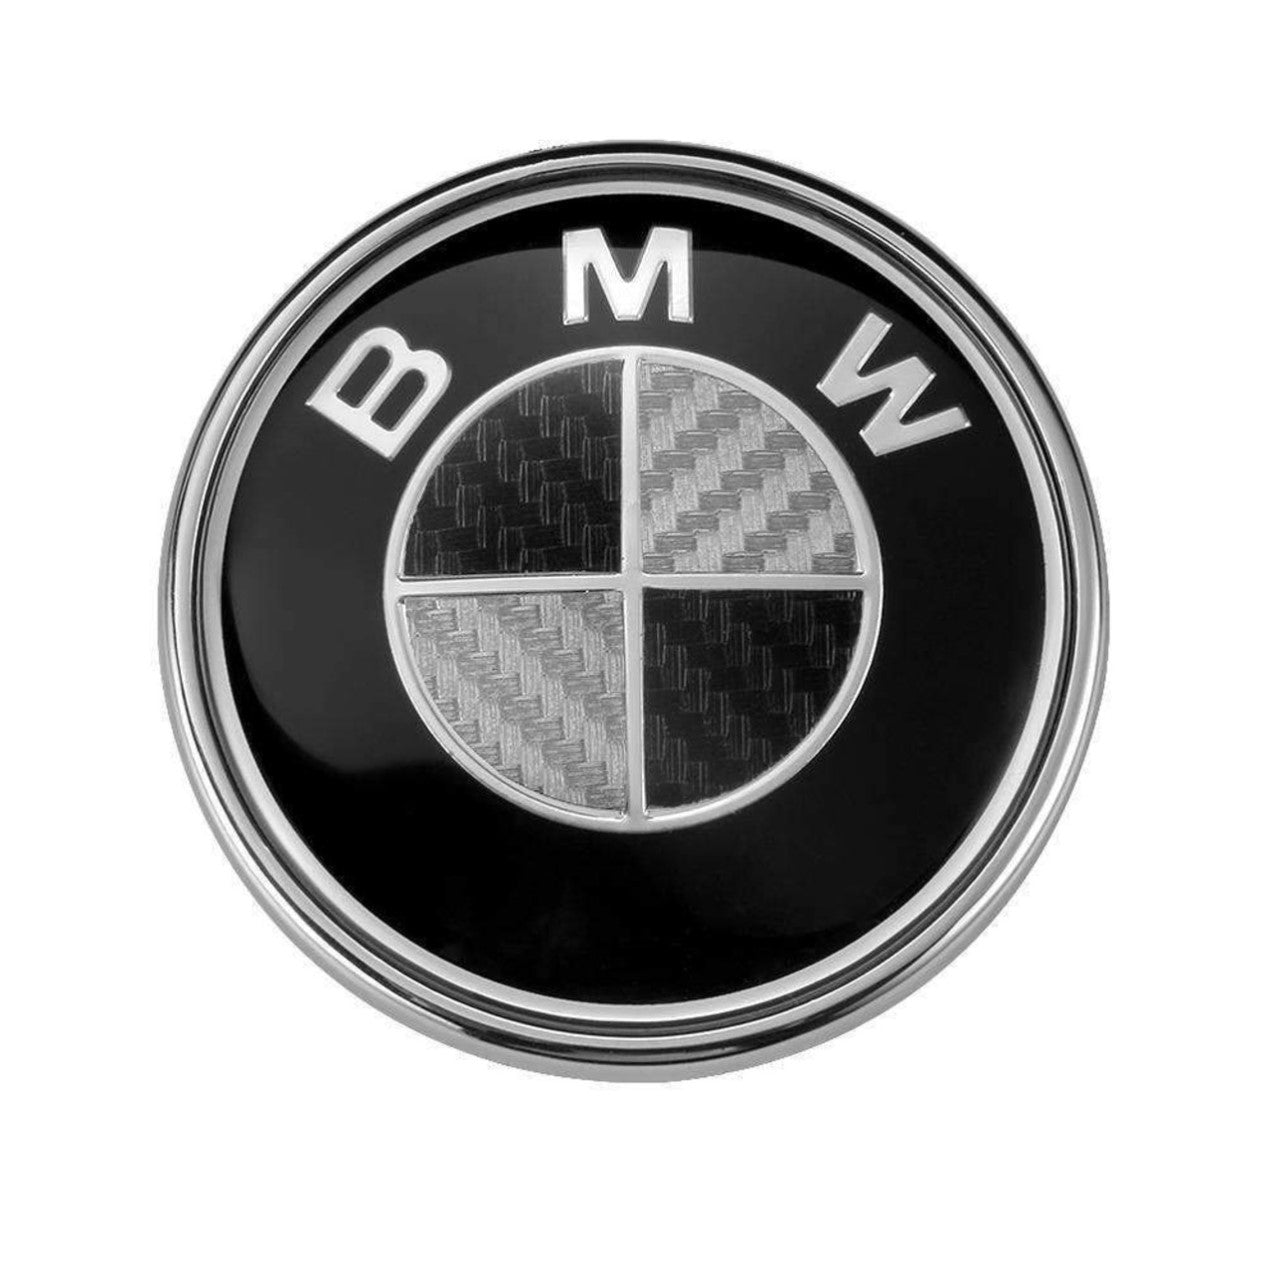 BMW Black & White Carbon Fiber Emblem Replacement Set (7 Piece)